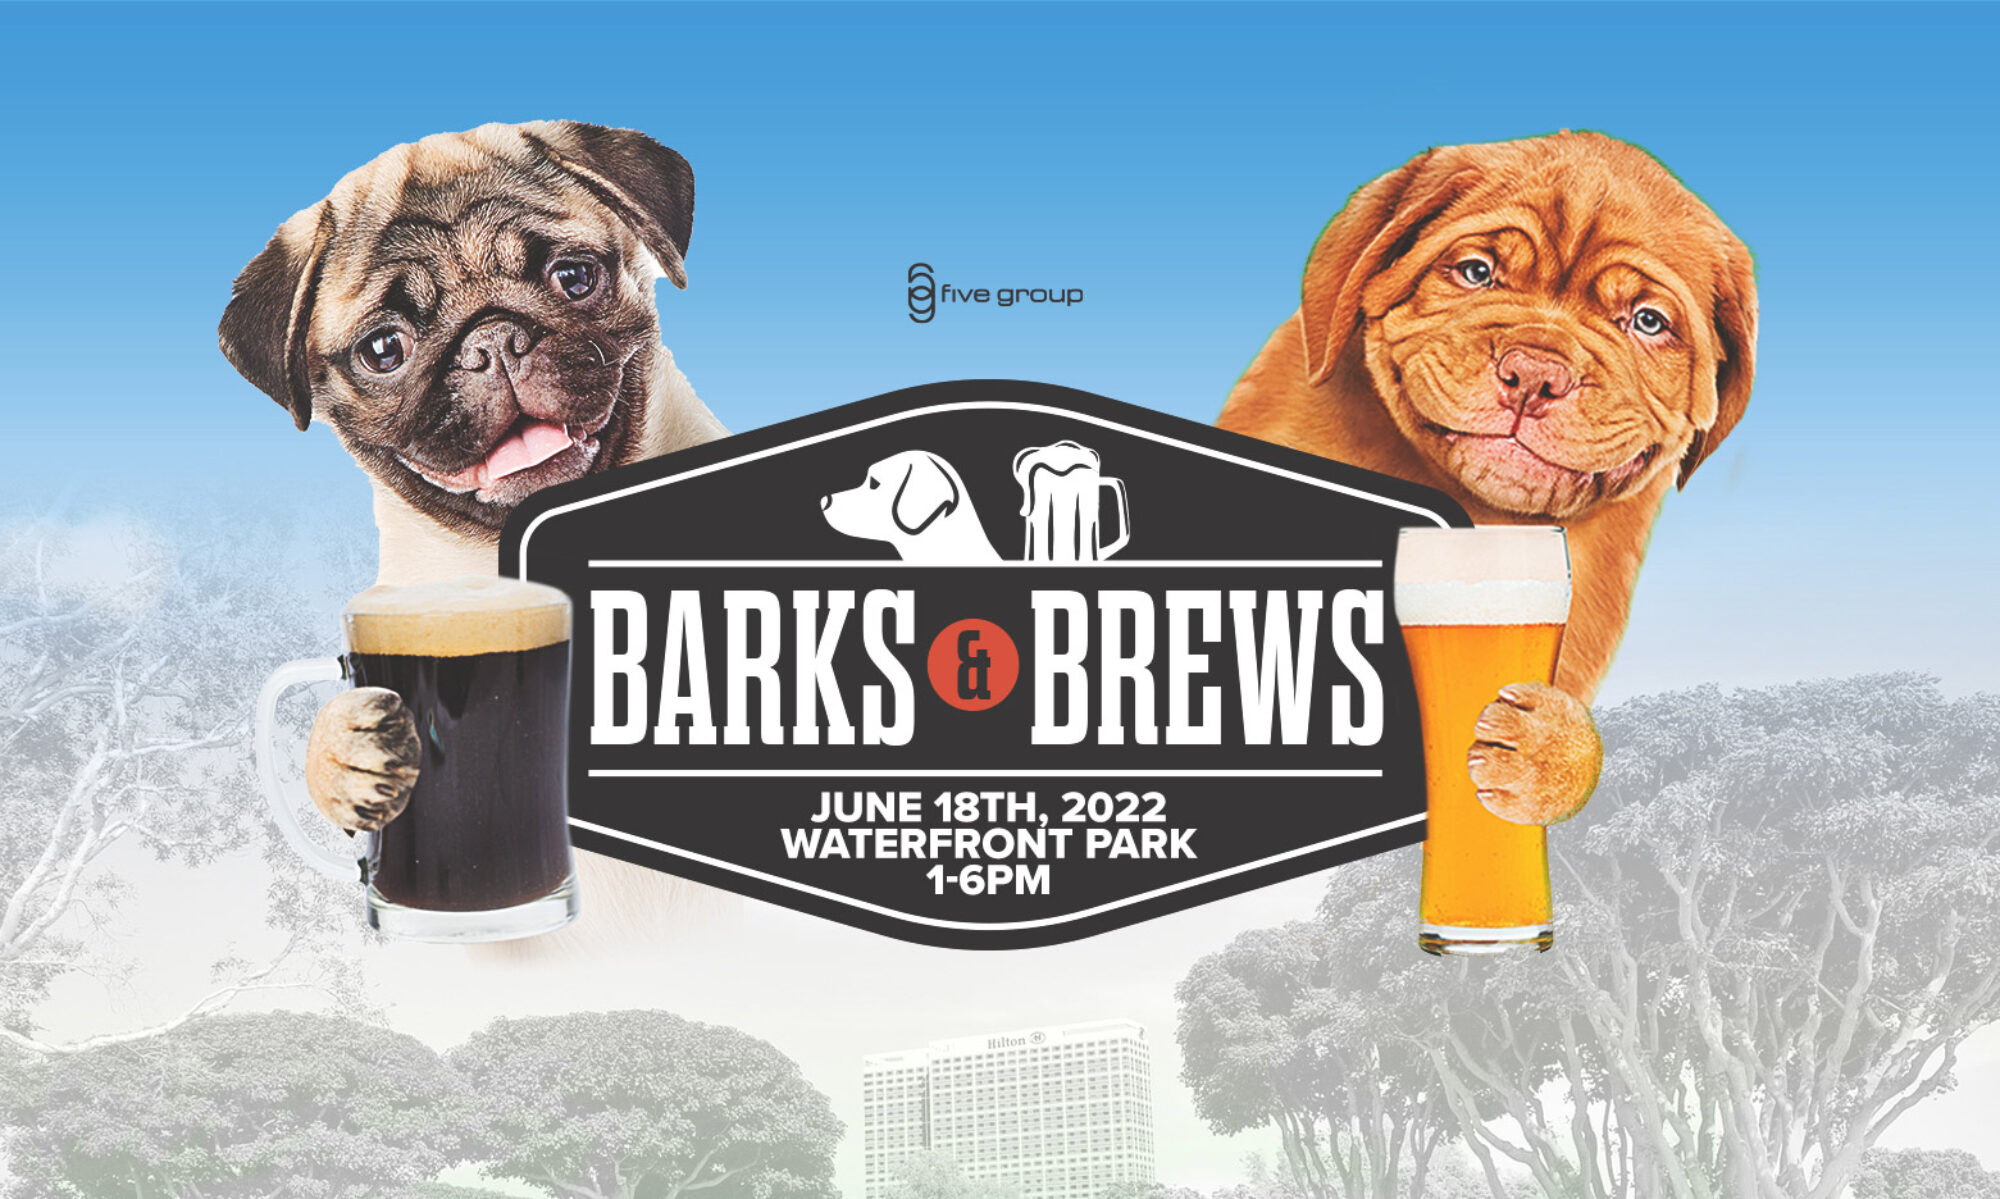 Barks & Brews